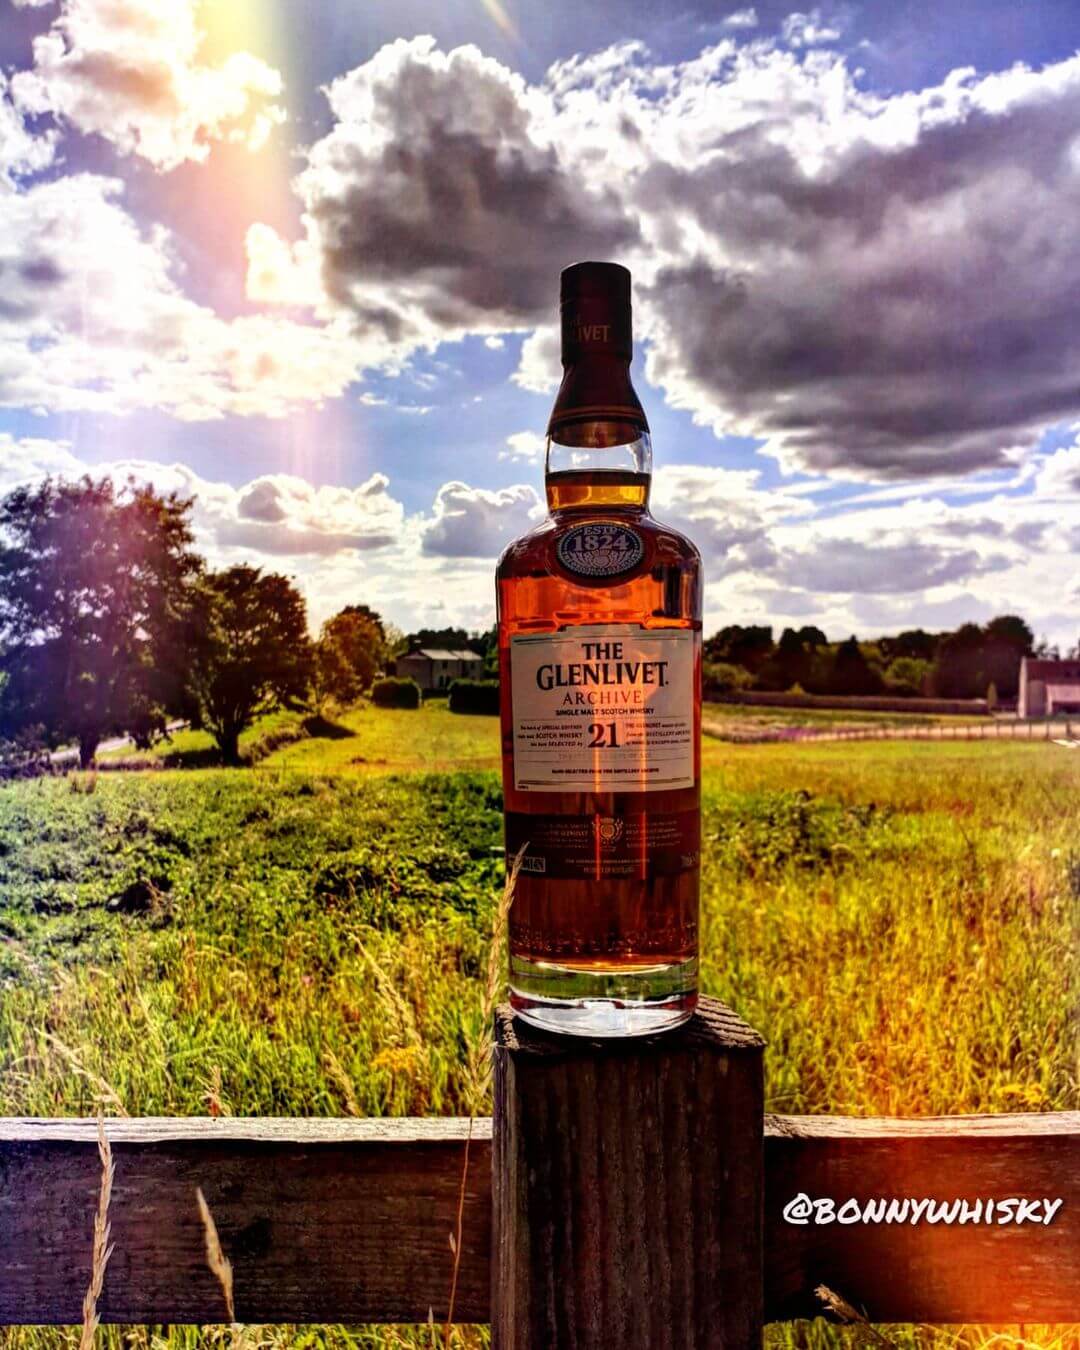 Glenlivet 21 Single Malt Scotch Whisky